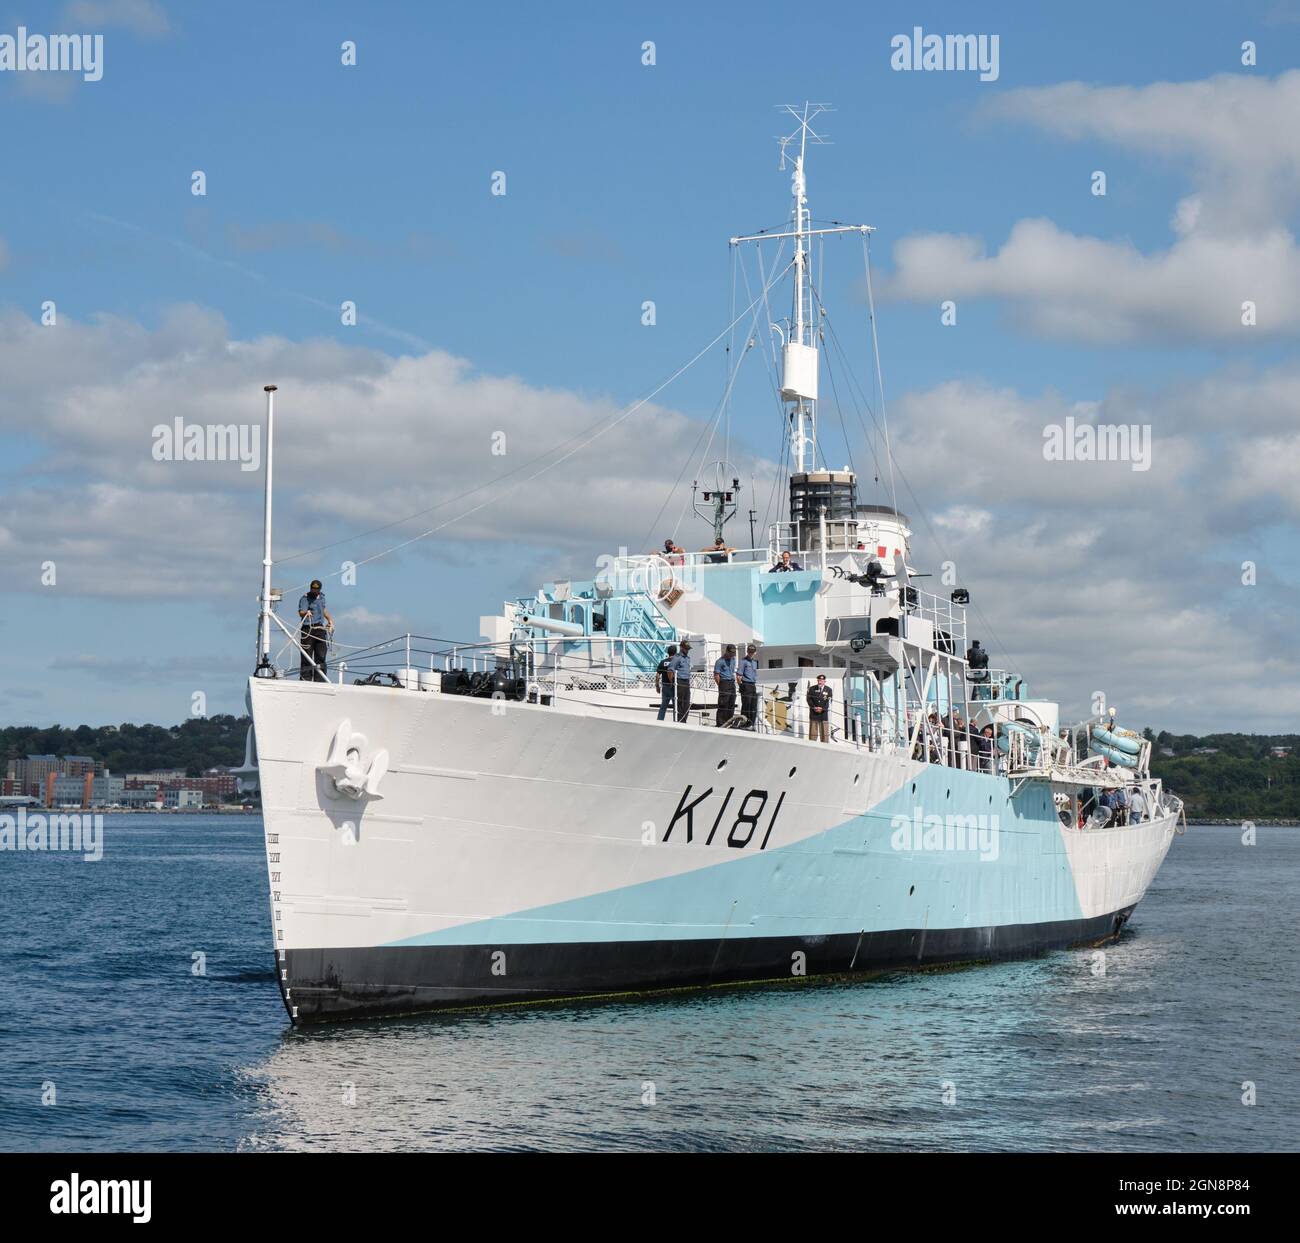 Halifax, Nova Scotia. Die HMCS Sackville, Kanadas ältestes Kriegsschiff, ist im Hafen von Halifax im Einsatz. Als Kriegsveteran des Zweiten Weltkriegs ist sie die letzte von 123 Korvetten Kanadas, eines von vielen während des Krieges gebauten Begleitschiffen. Das Schiff wurde heute in Dienst gestellt, um bei einer Aschezeremonie auf See zu helfen Stockfoto